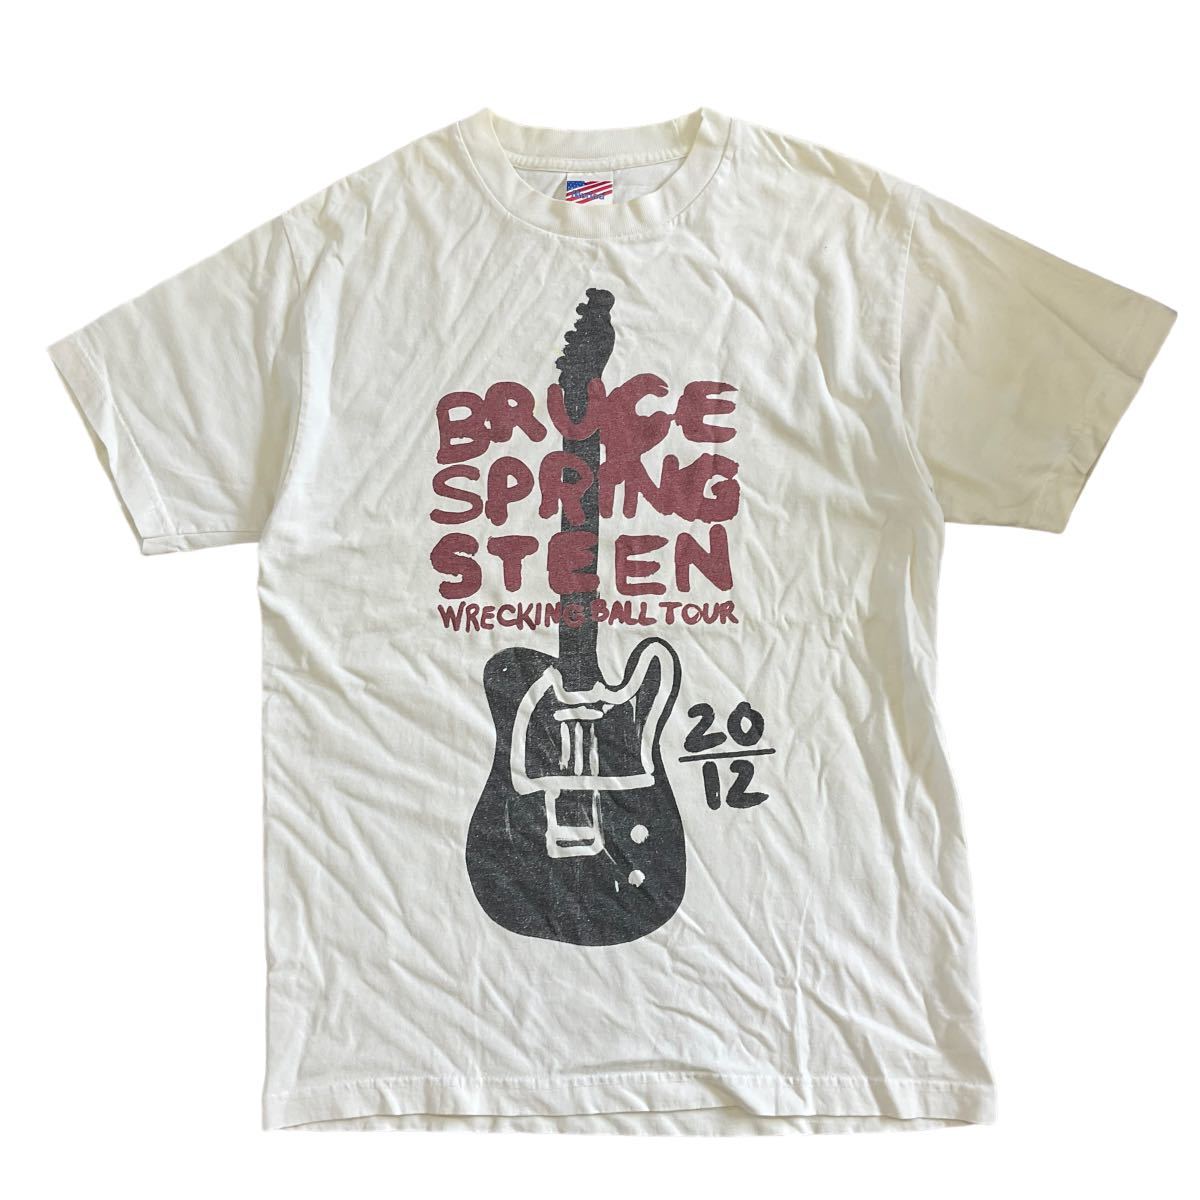 BRUCE SPRING STEEN ホワイトM 半袖 Tシャツ ブルース スプリングスティーン 2012年 ツアー USA ギター バンド ロック バンT_画像1